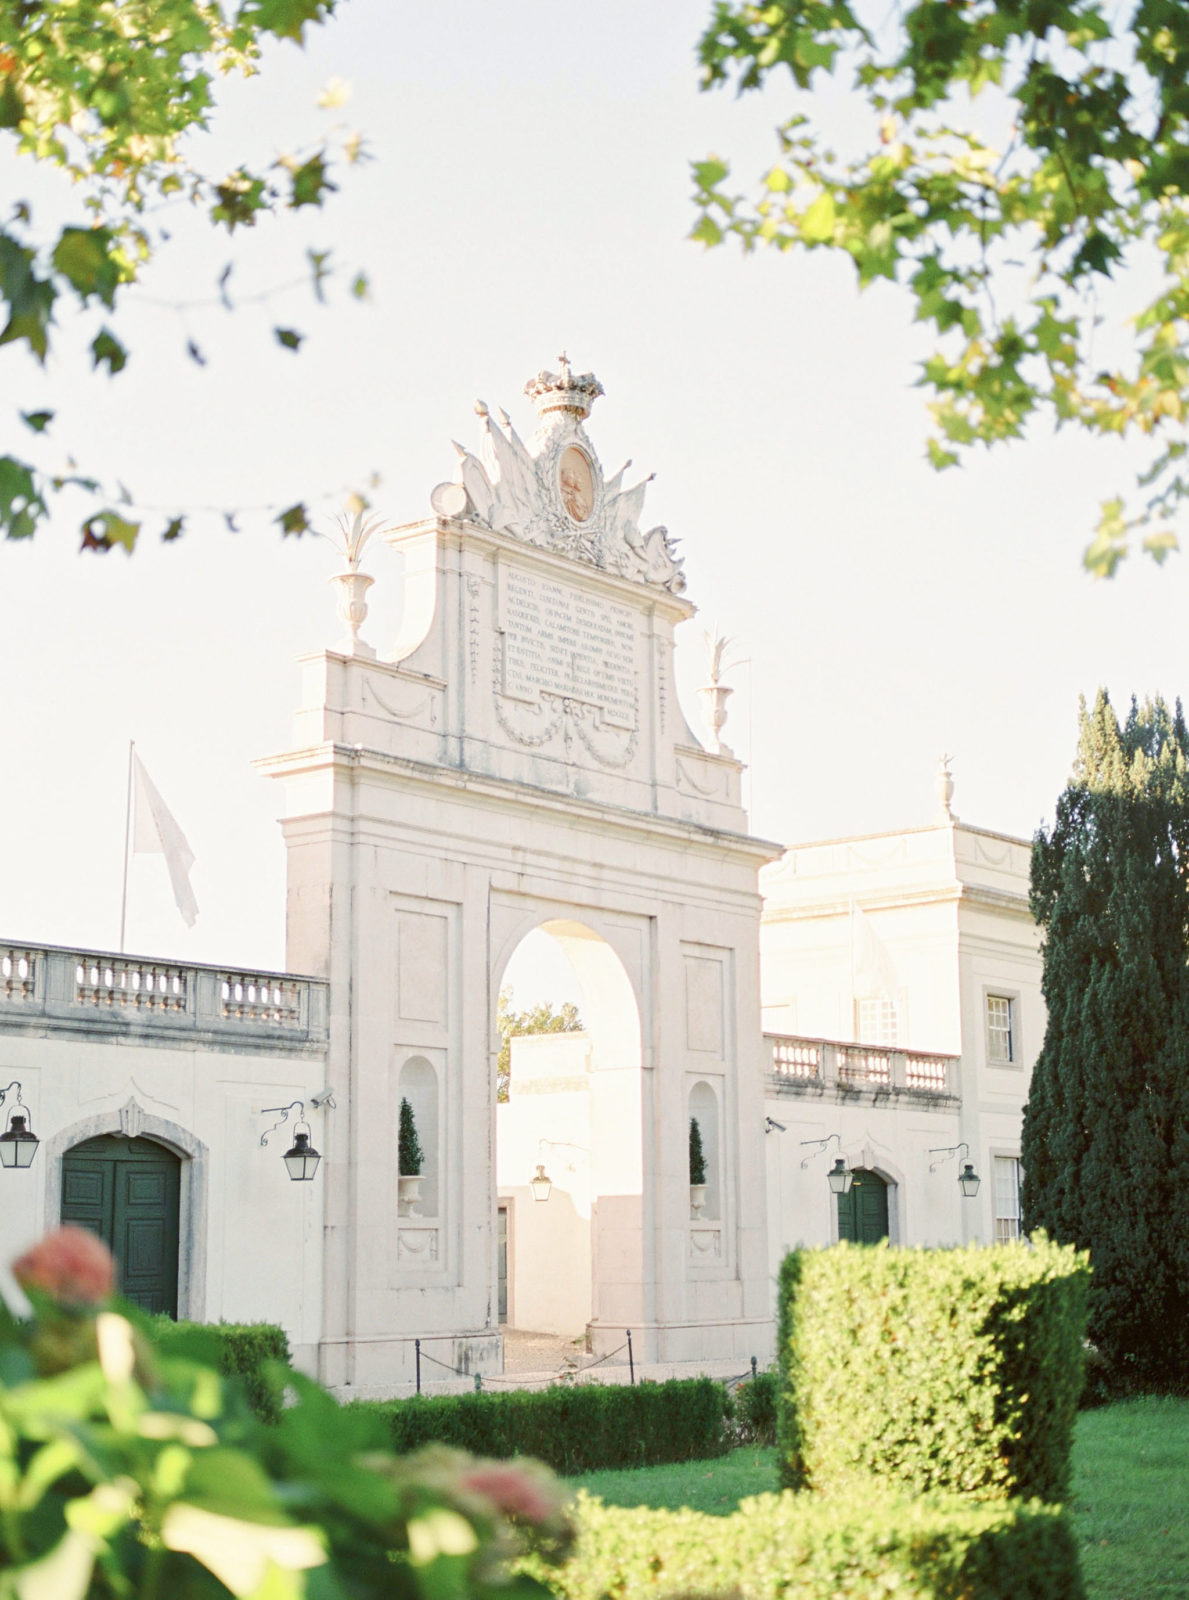 Palacio de Seteais in Sintra, Portugal 